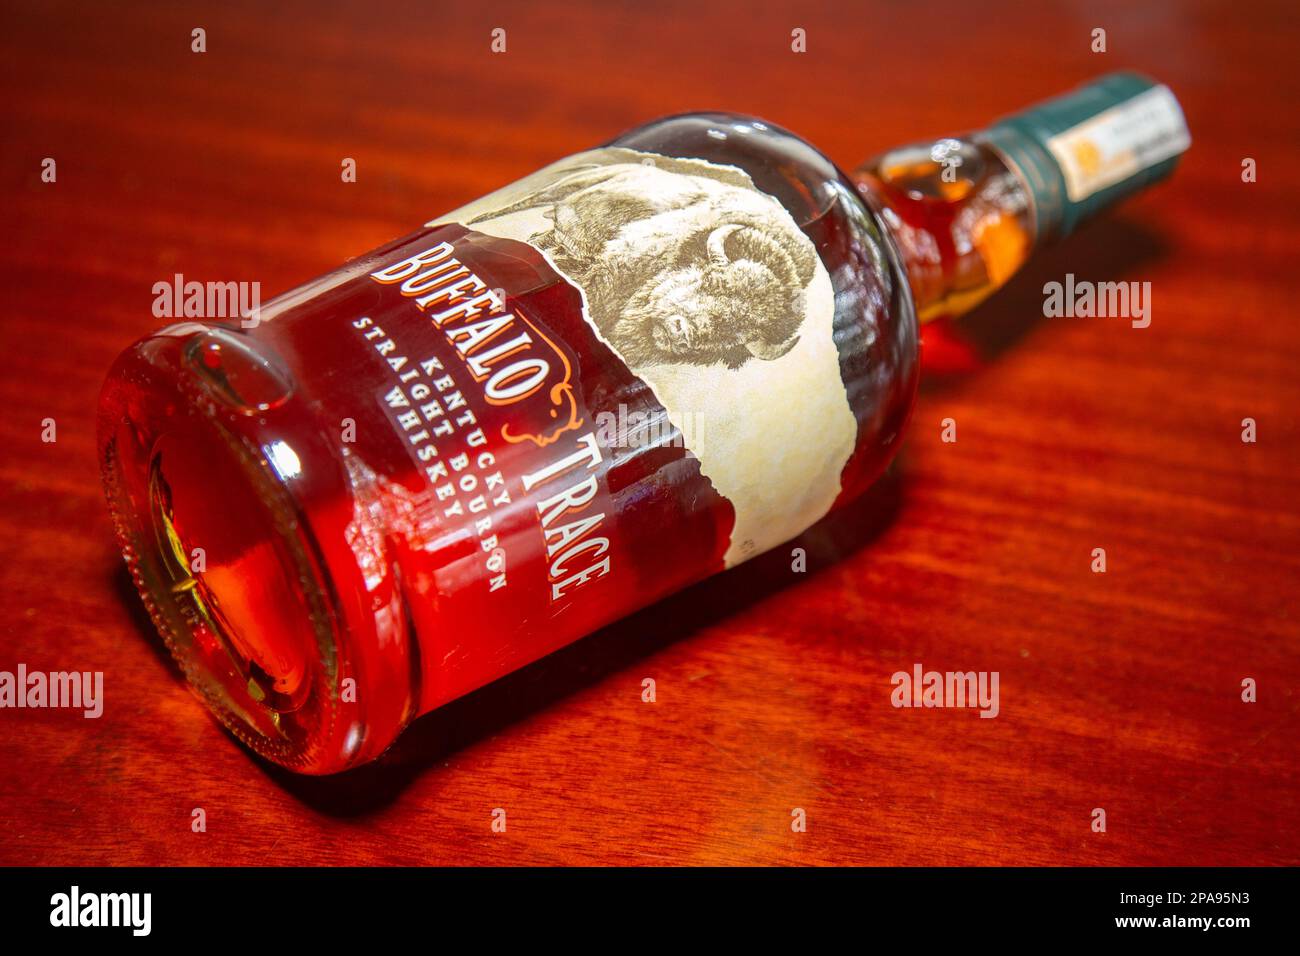 Buffalo Trace Whiskey straight bourbon Kentucky. Stock Photo